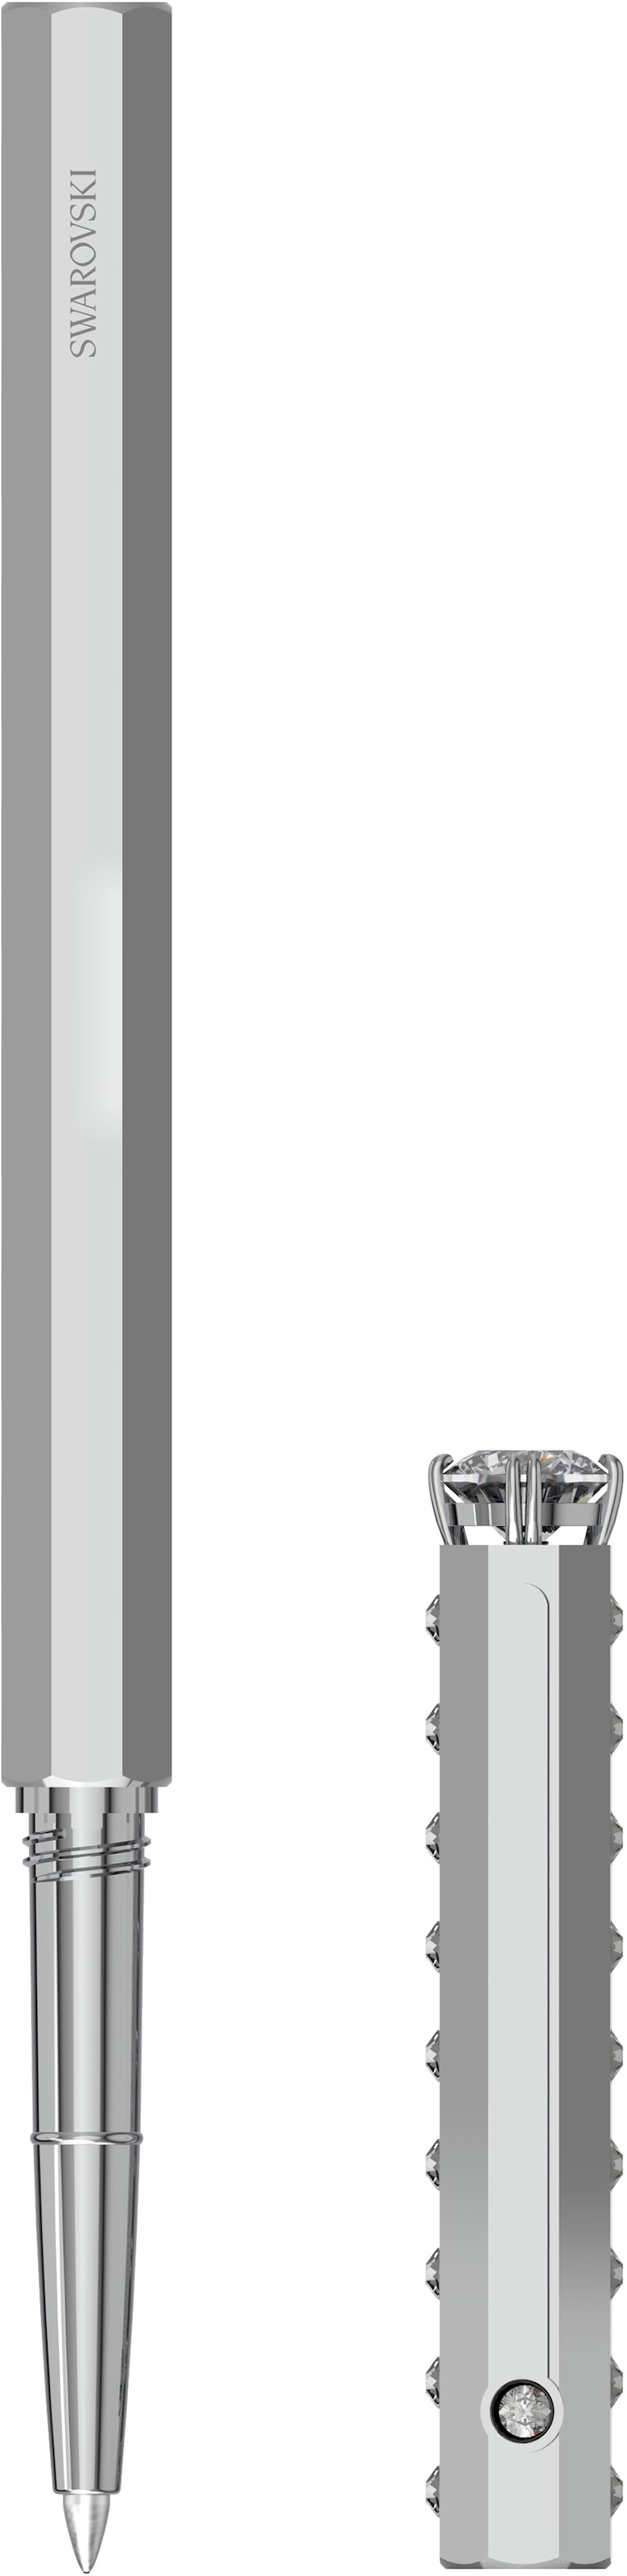 Swarovski Kugelschreiber »Klassisch, 5627168, 5631209, 5631210, 5634417«, mit Swarovski® Kristallen